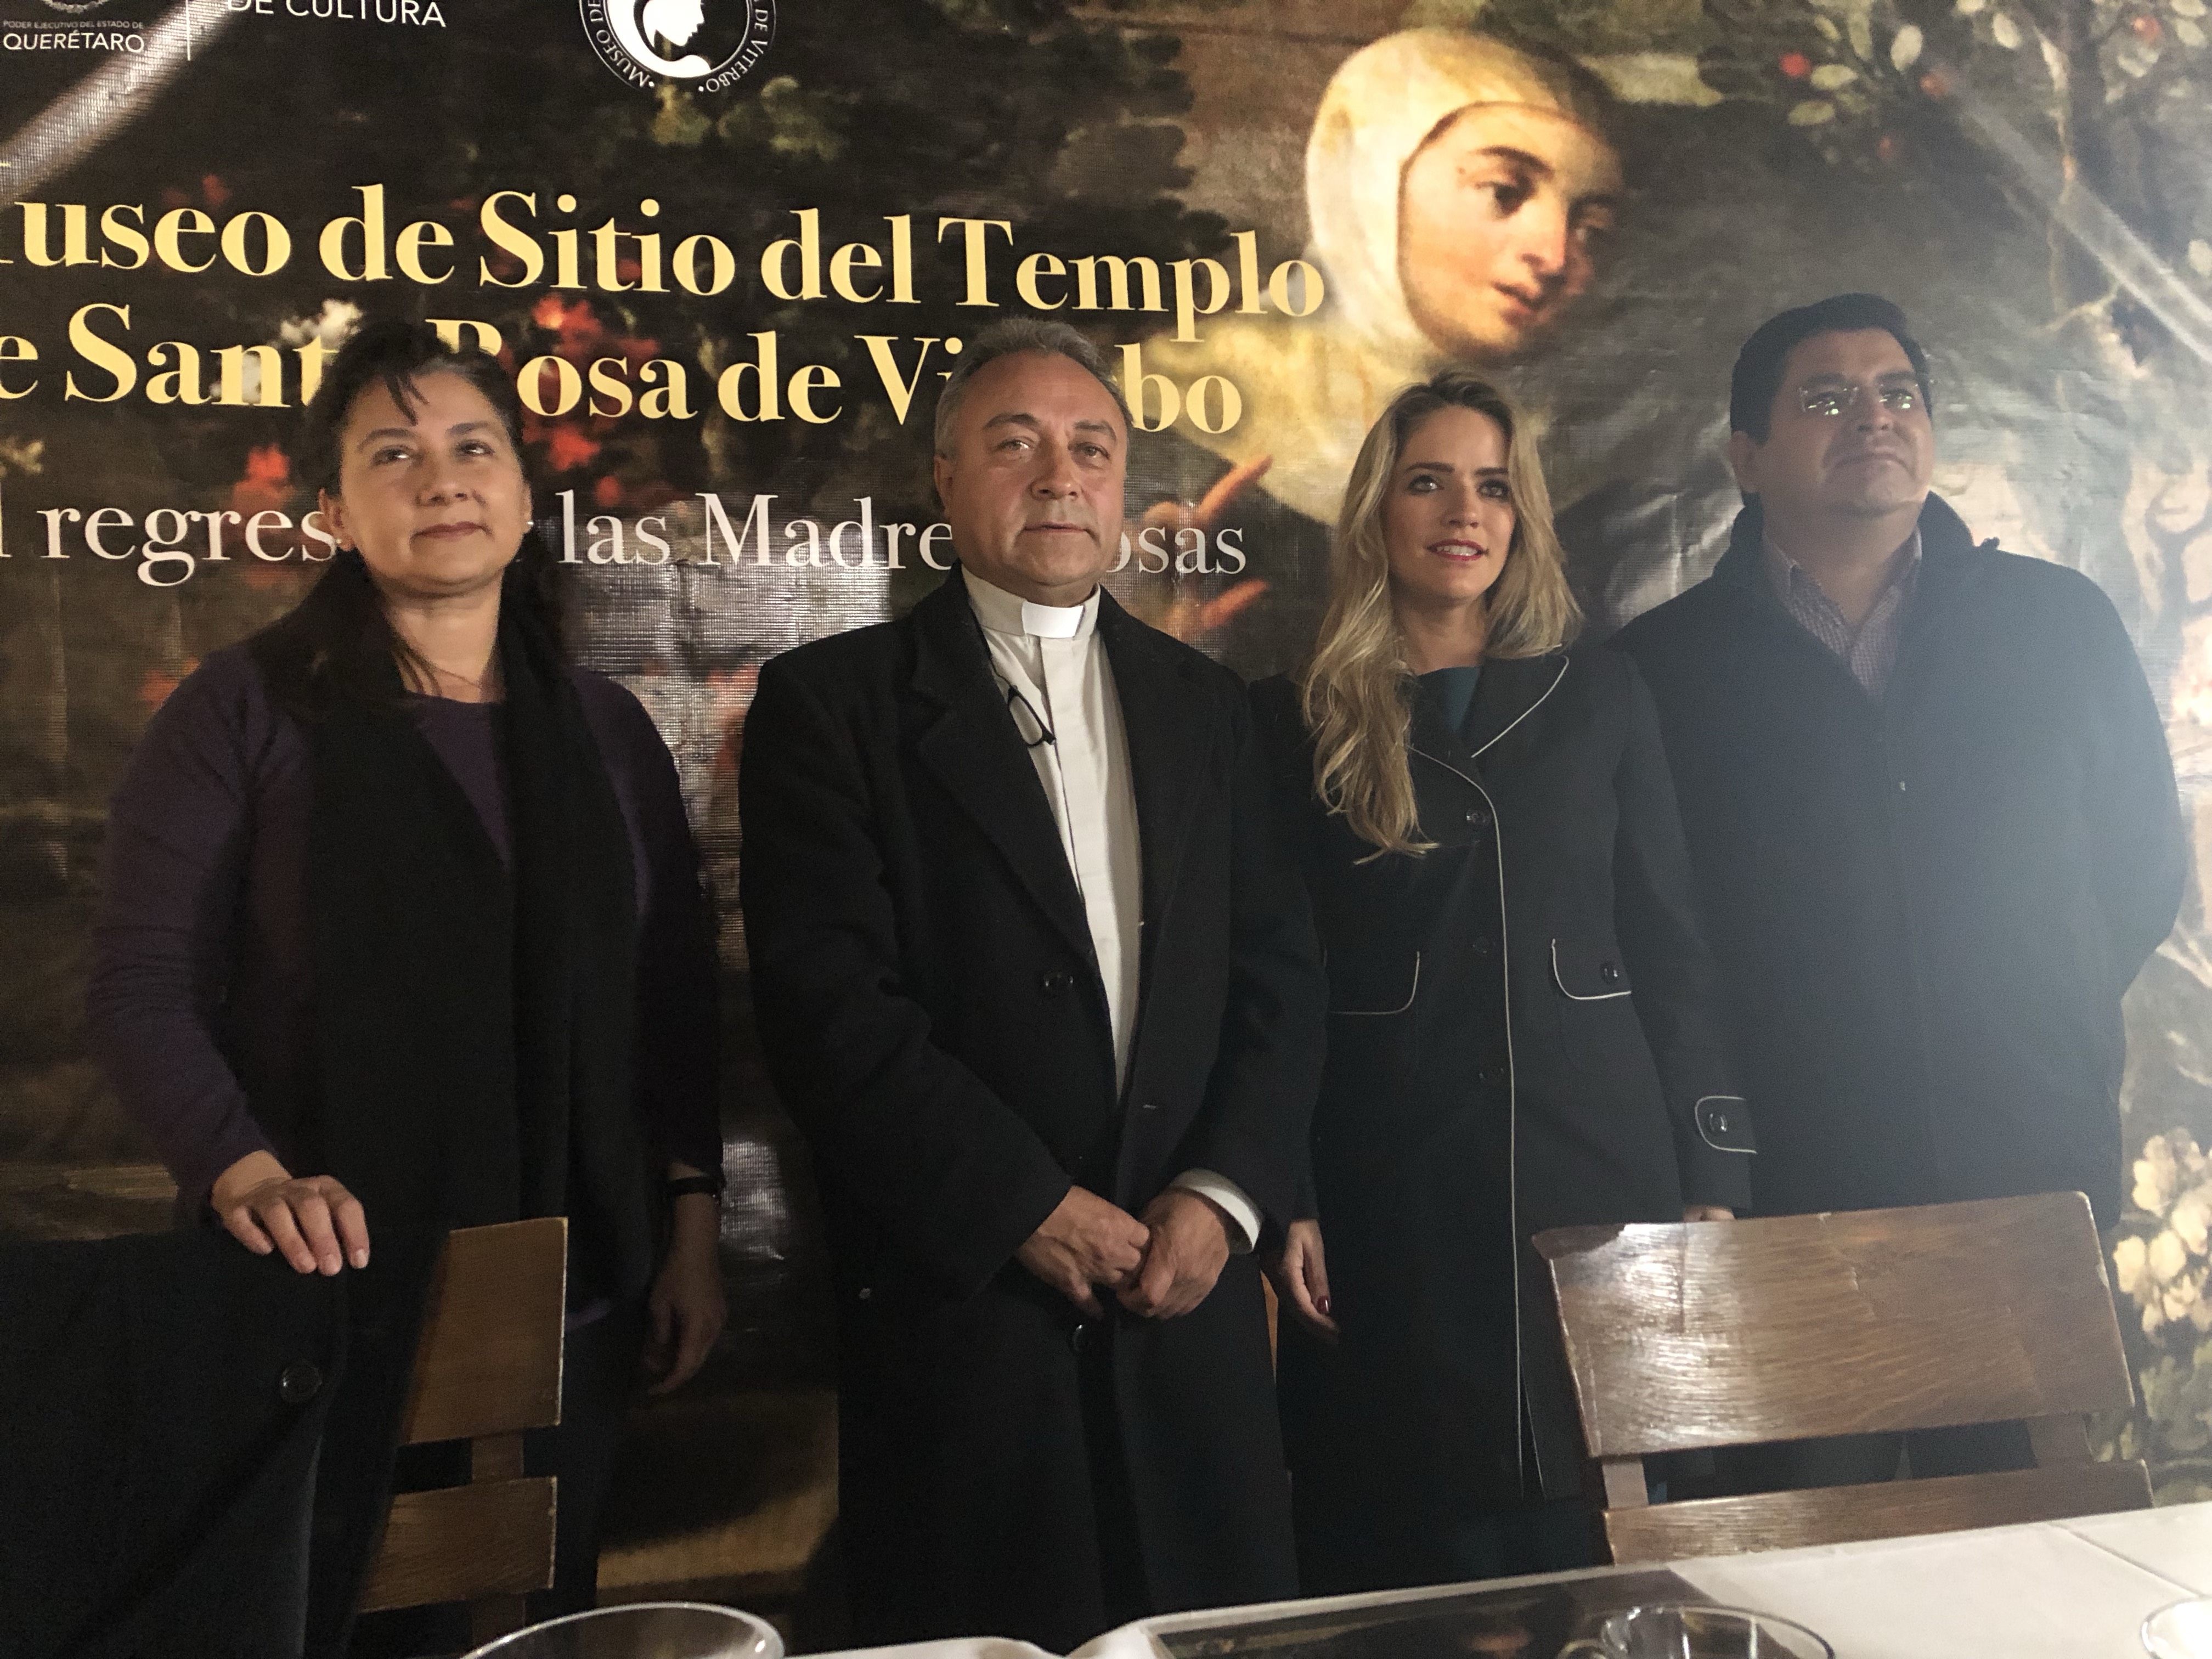  Con muestra religiosa, alistan apertura de museo en Santa Rosa de Viterbo